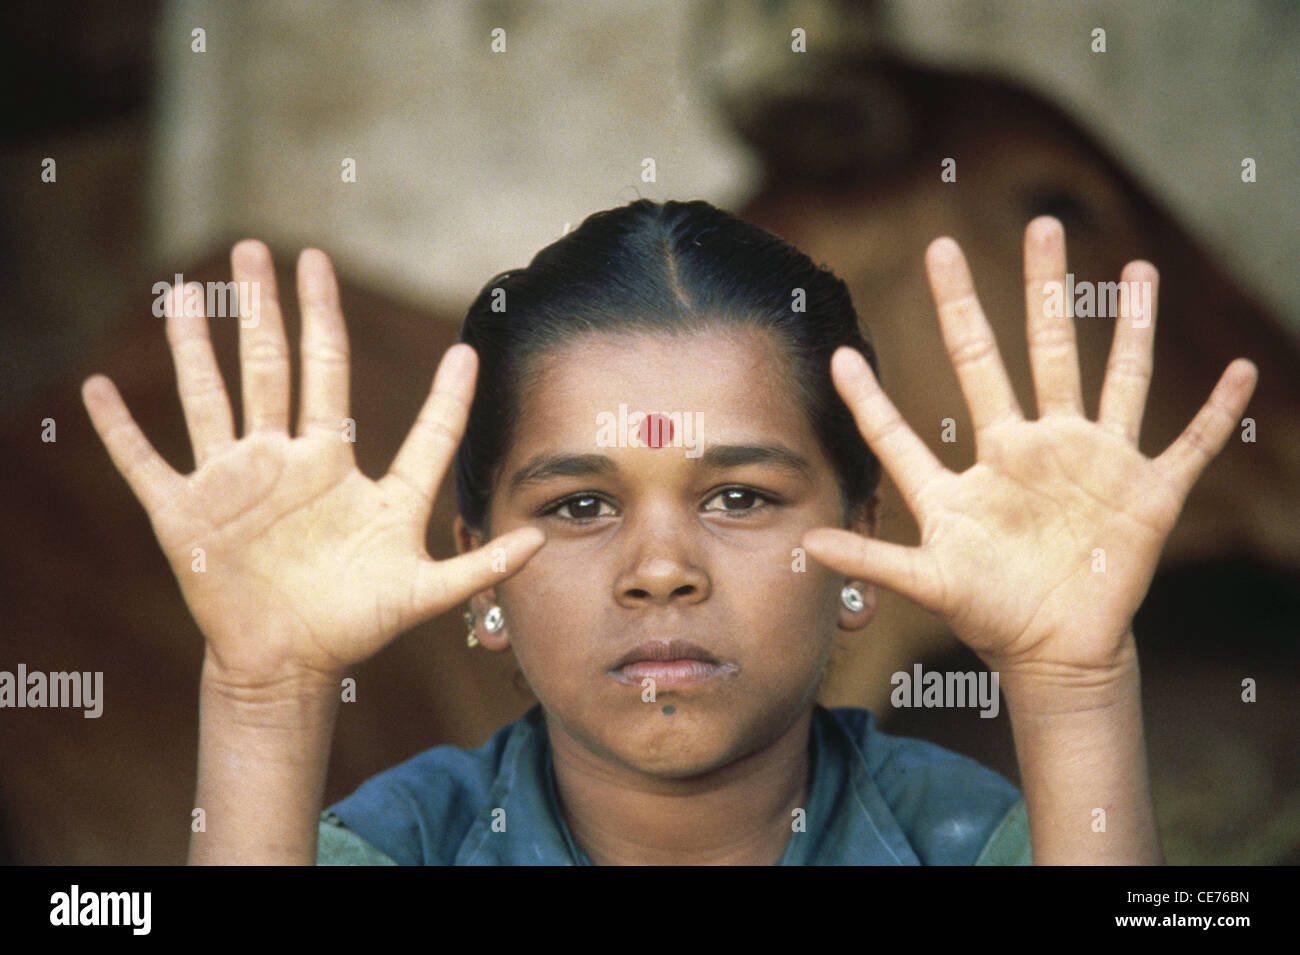 Hexadactilly ; ragazza indiana con sei dita in mano ; malformazione congenita ; Polidattilia ; polidattilismo ; iperdattilia ; India ; Asia Foto Stock